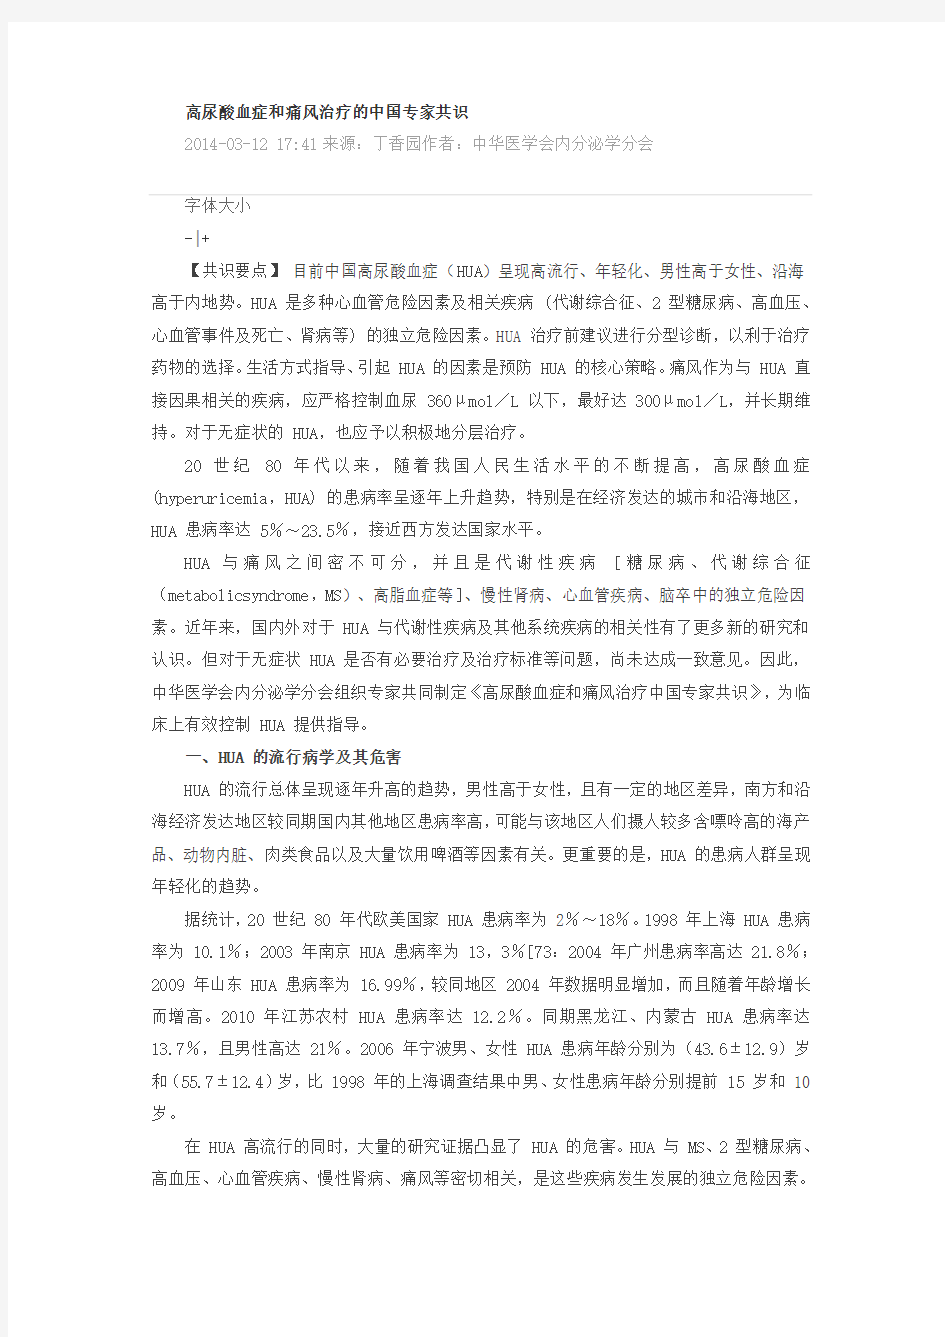 高尿酸血症和痛风治疗的中国专家共识2014